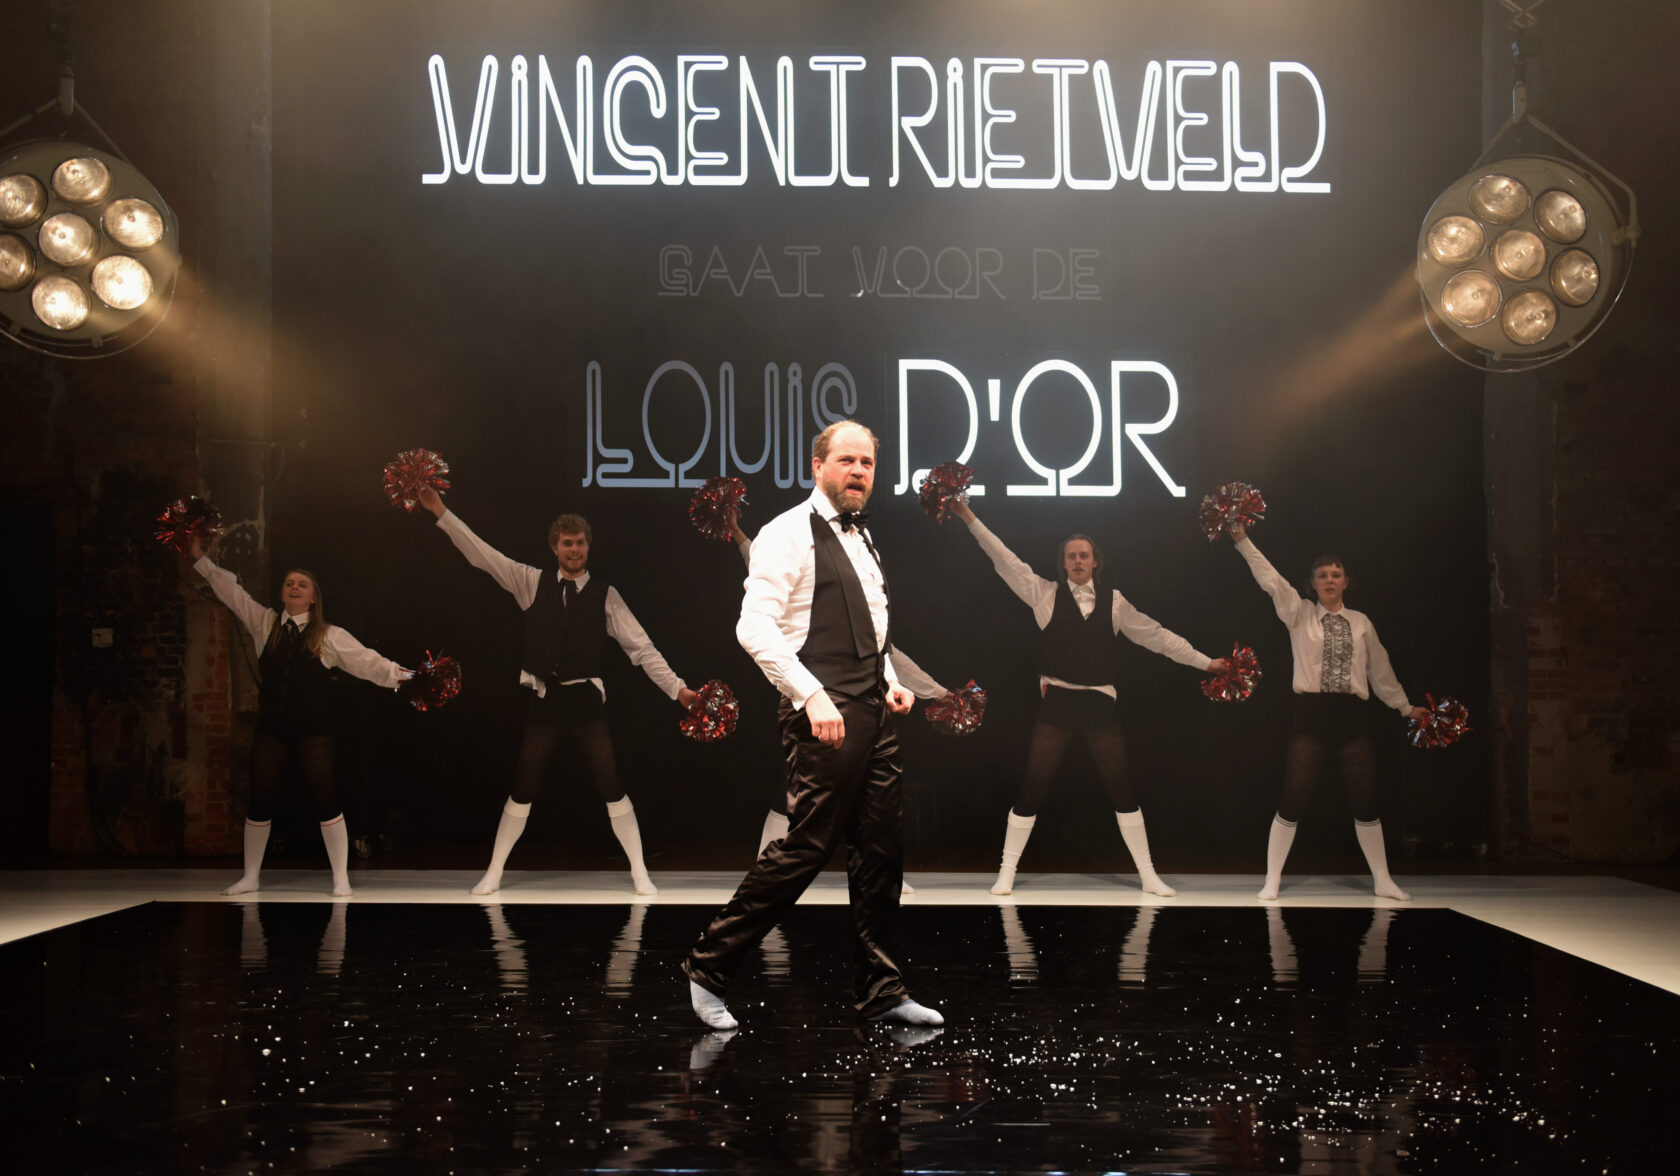 Vincent Rietveld gaat voor de Louis d’Or